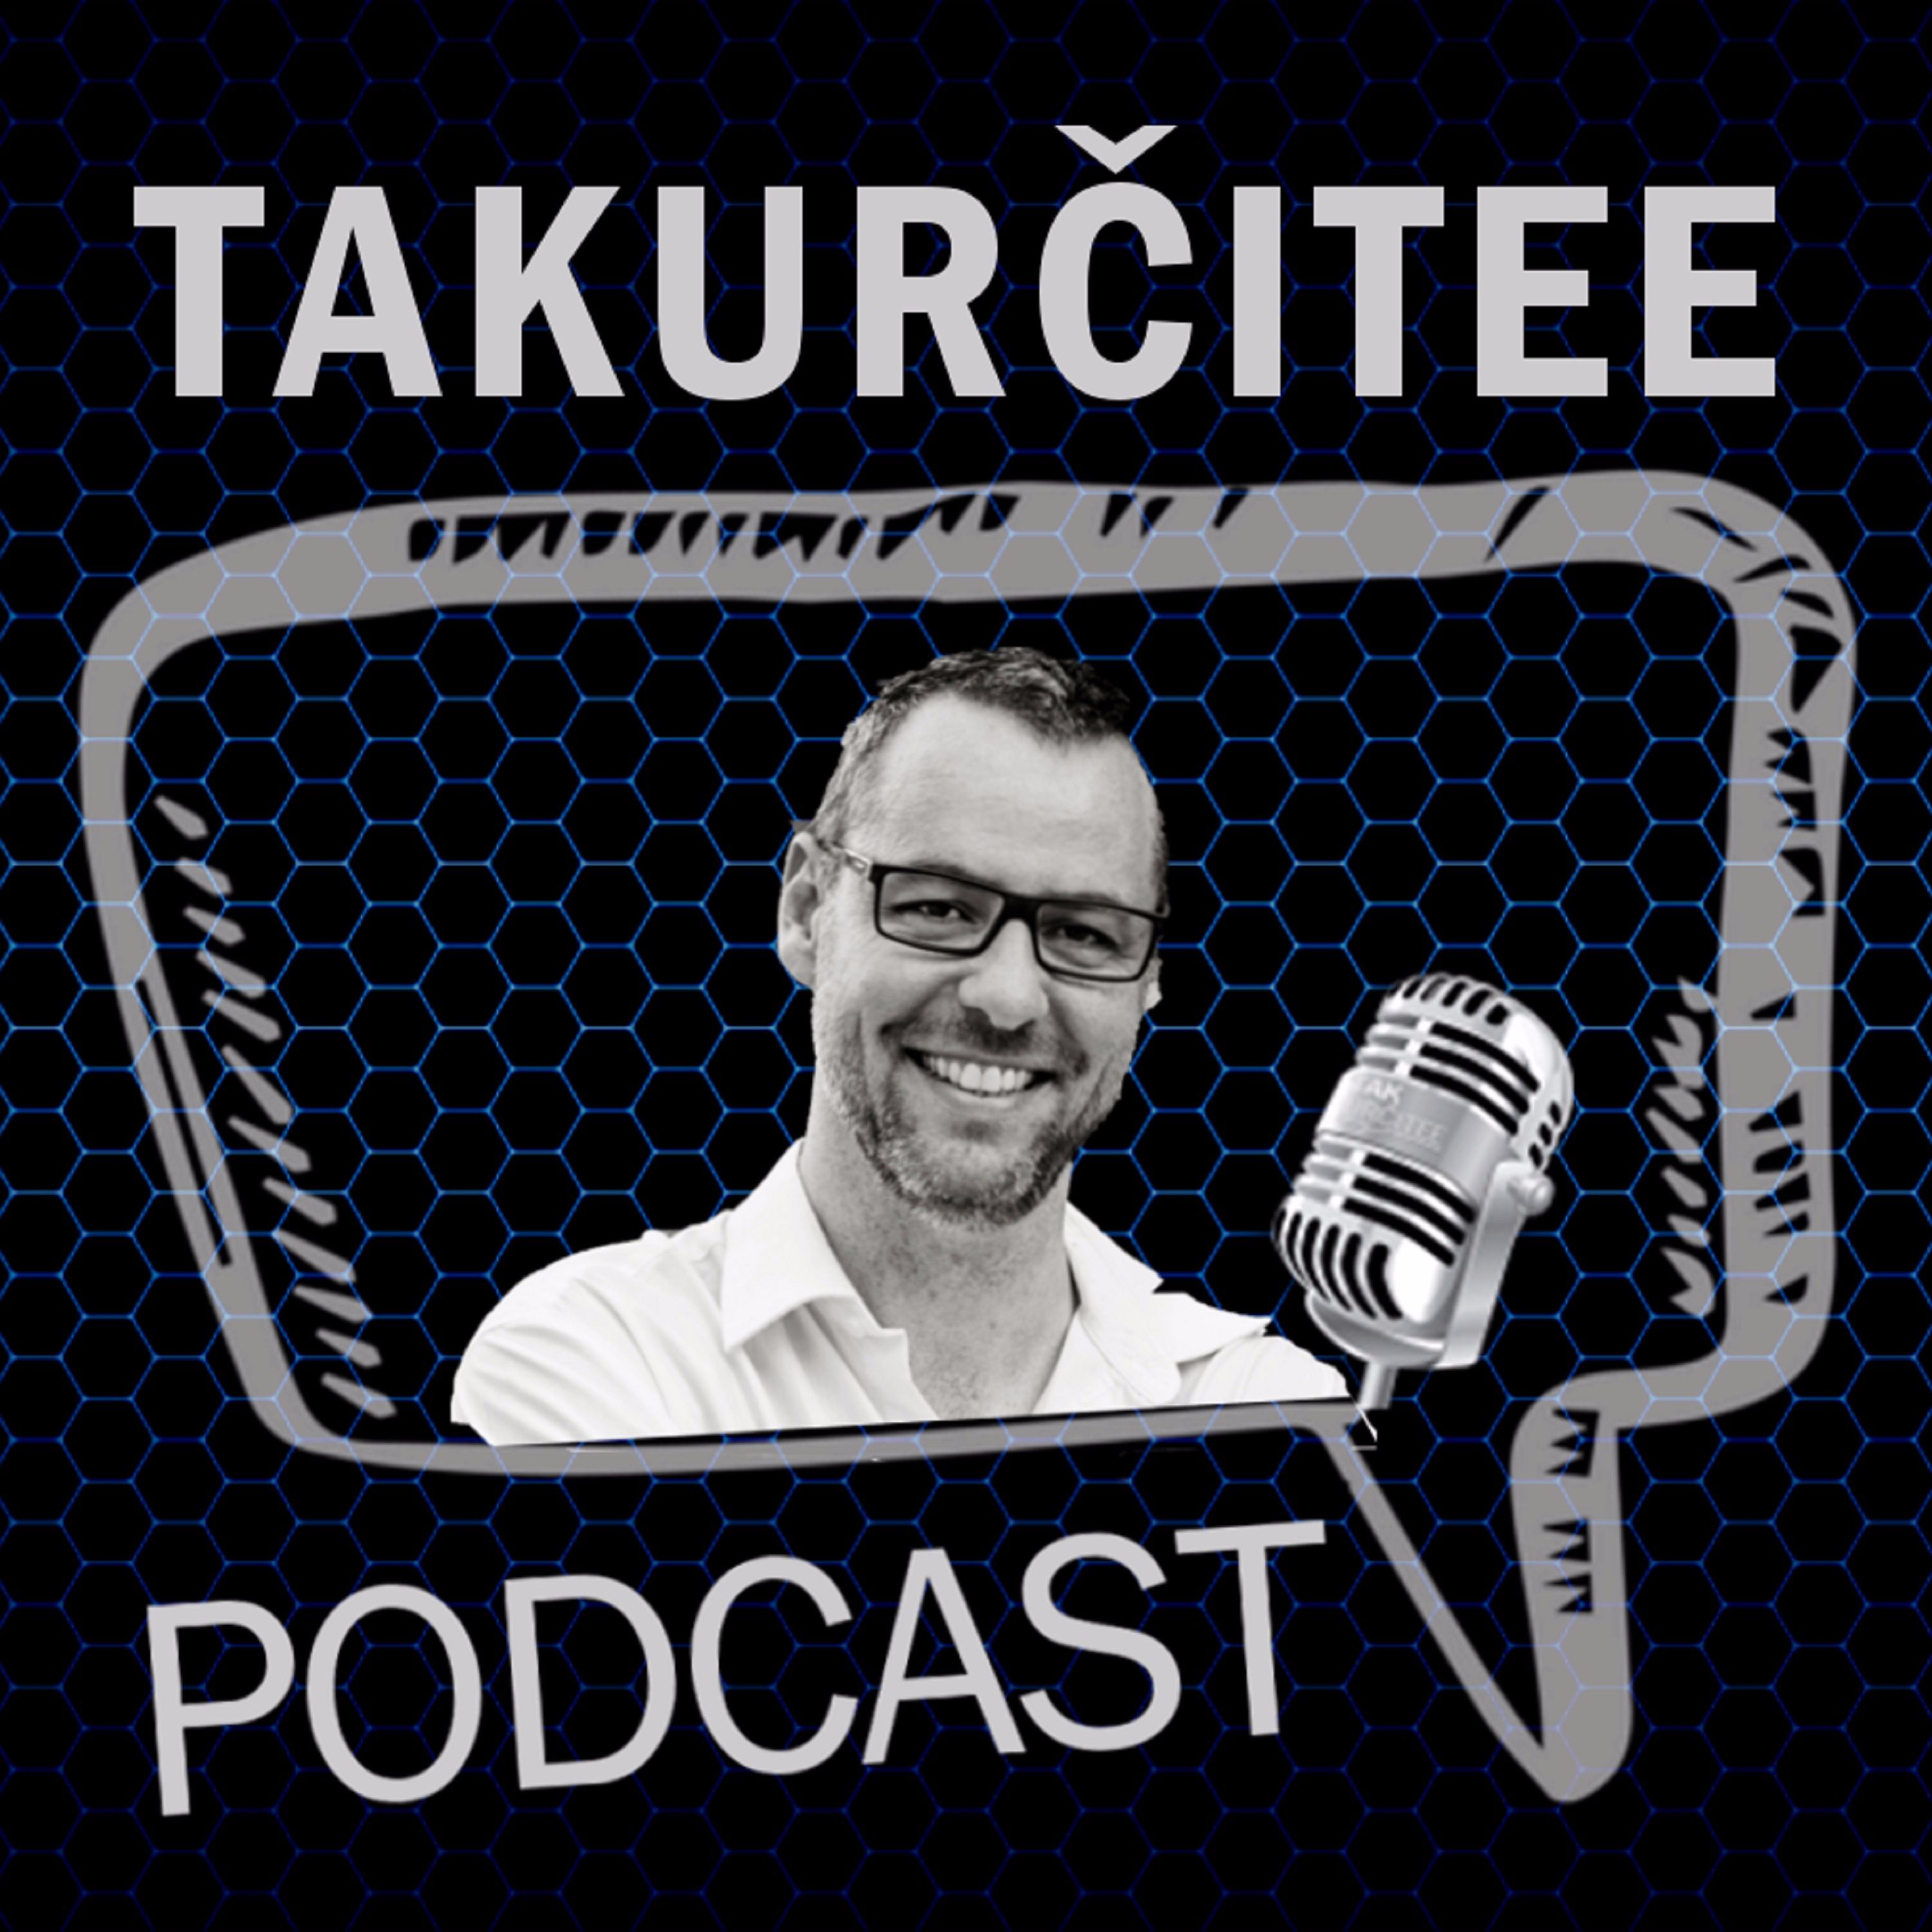 TakUrčitee Podcast, Ep. 12: Hokejové finále, NHL playoff a repre